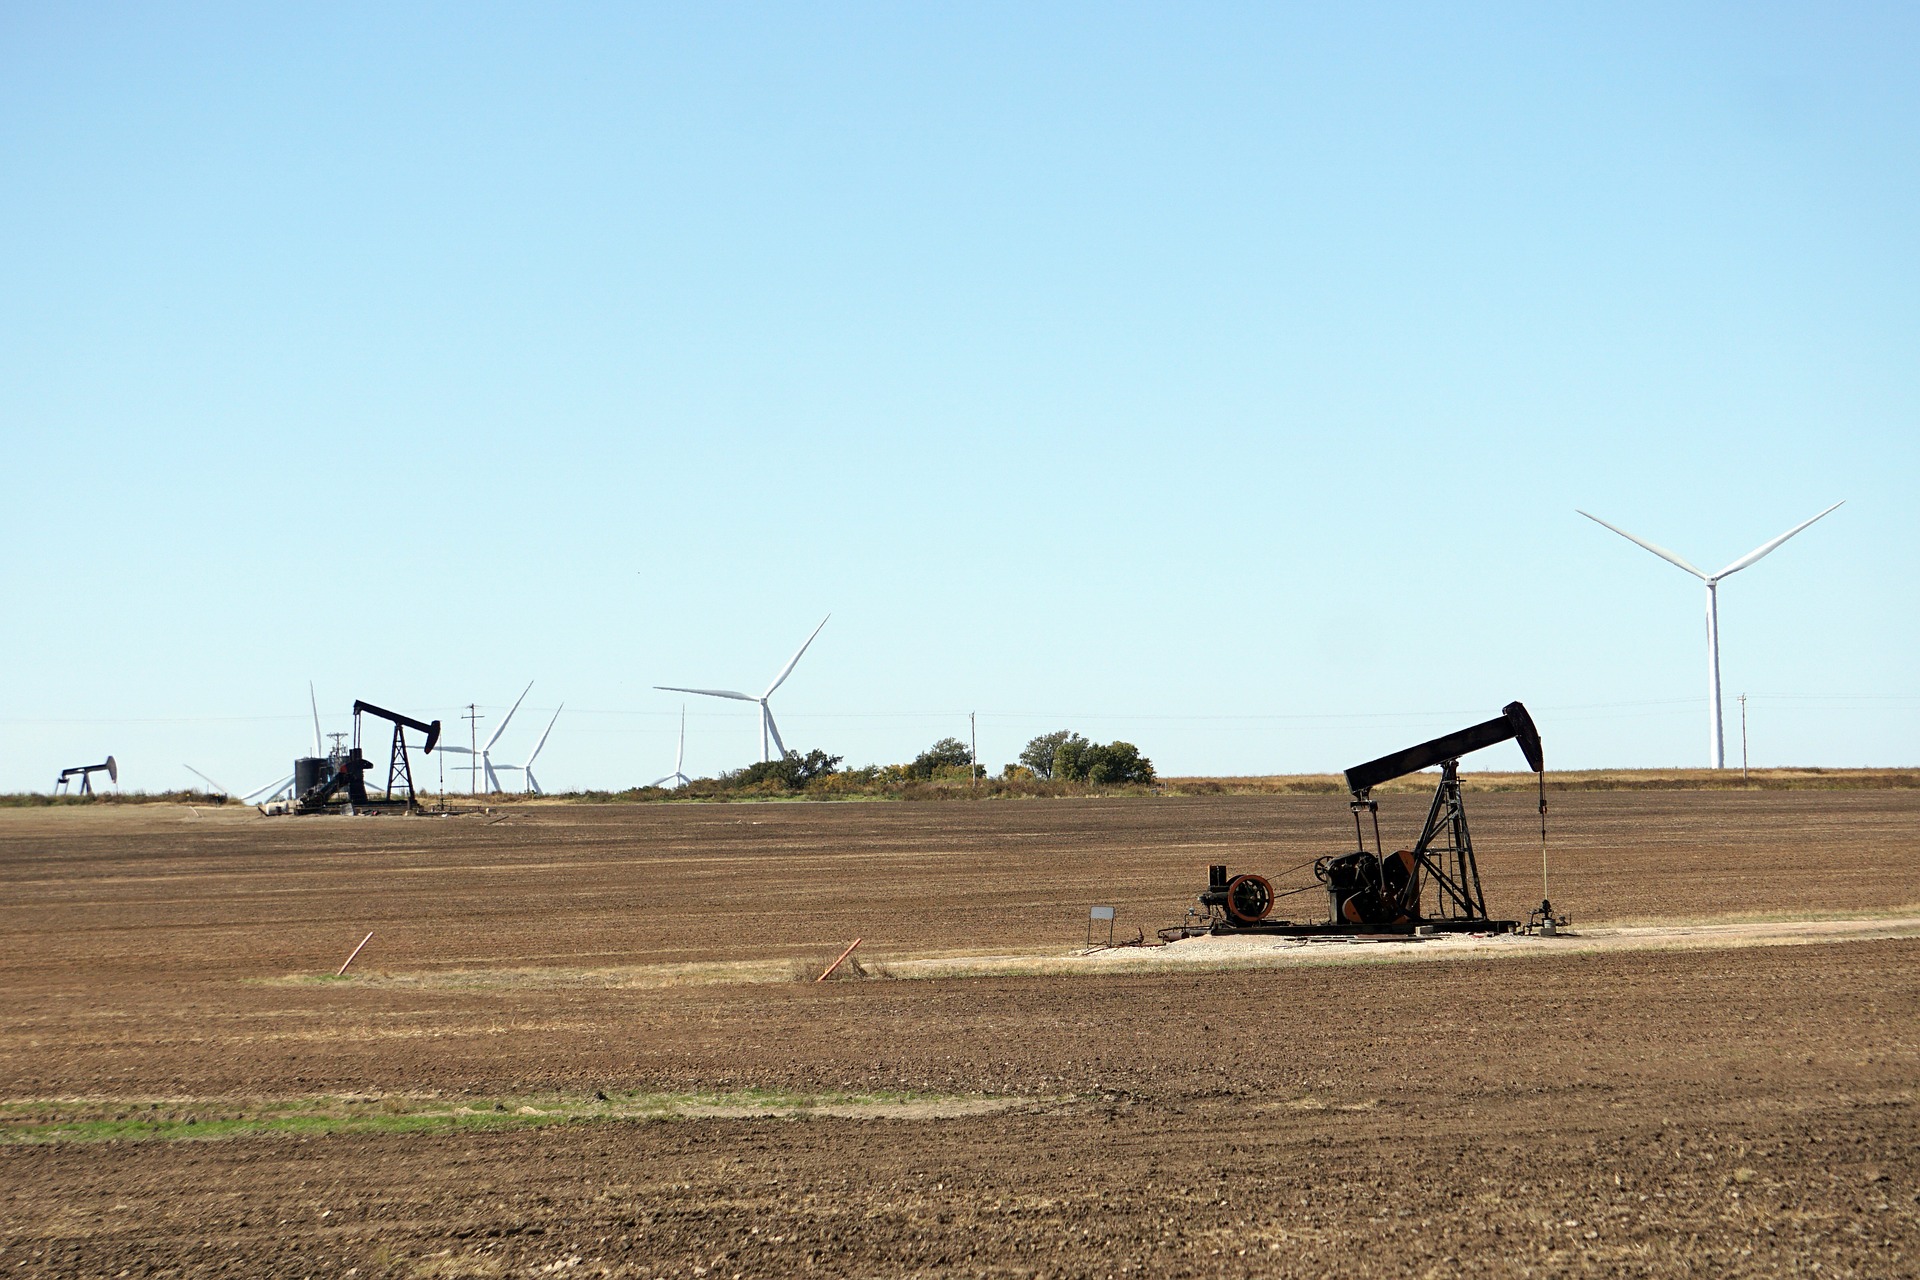 Receitas de países dependentes de petróleo podem ter queda pela metade em cenário de transição energética acelerada, diz Carbon Tracker Initiative. Na imagem: Cavalos-de-pau para a produção onshore de petróleo, em Oklahoma (EUA), com turbinas eólicas ao fundo (Foto: Mike/RJA1988/Pixabay)